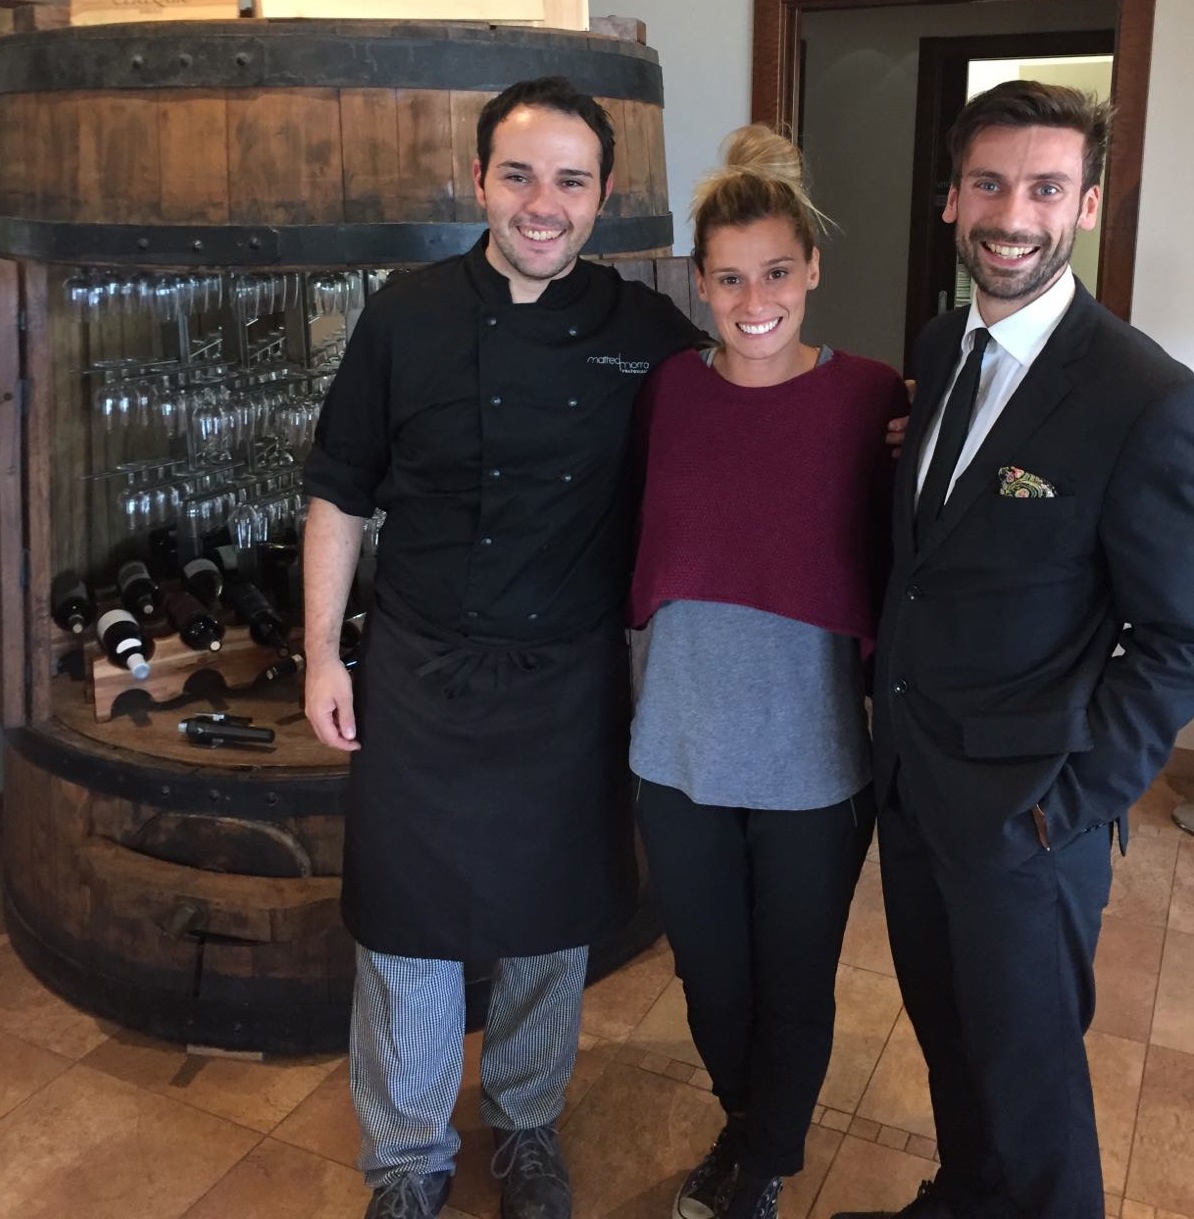 Francesca Dallapè al Matteo Morra Restaurant nella cantina Sylla Sebaste insieme allo chef Matteo Morra ed al maitre Andrea Stupia